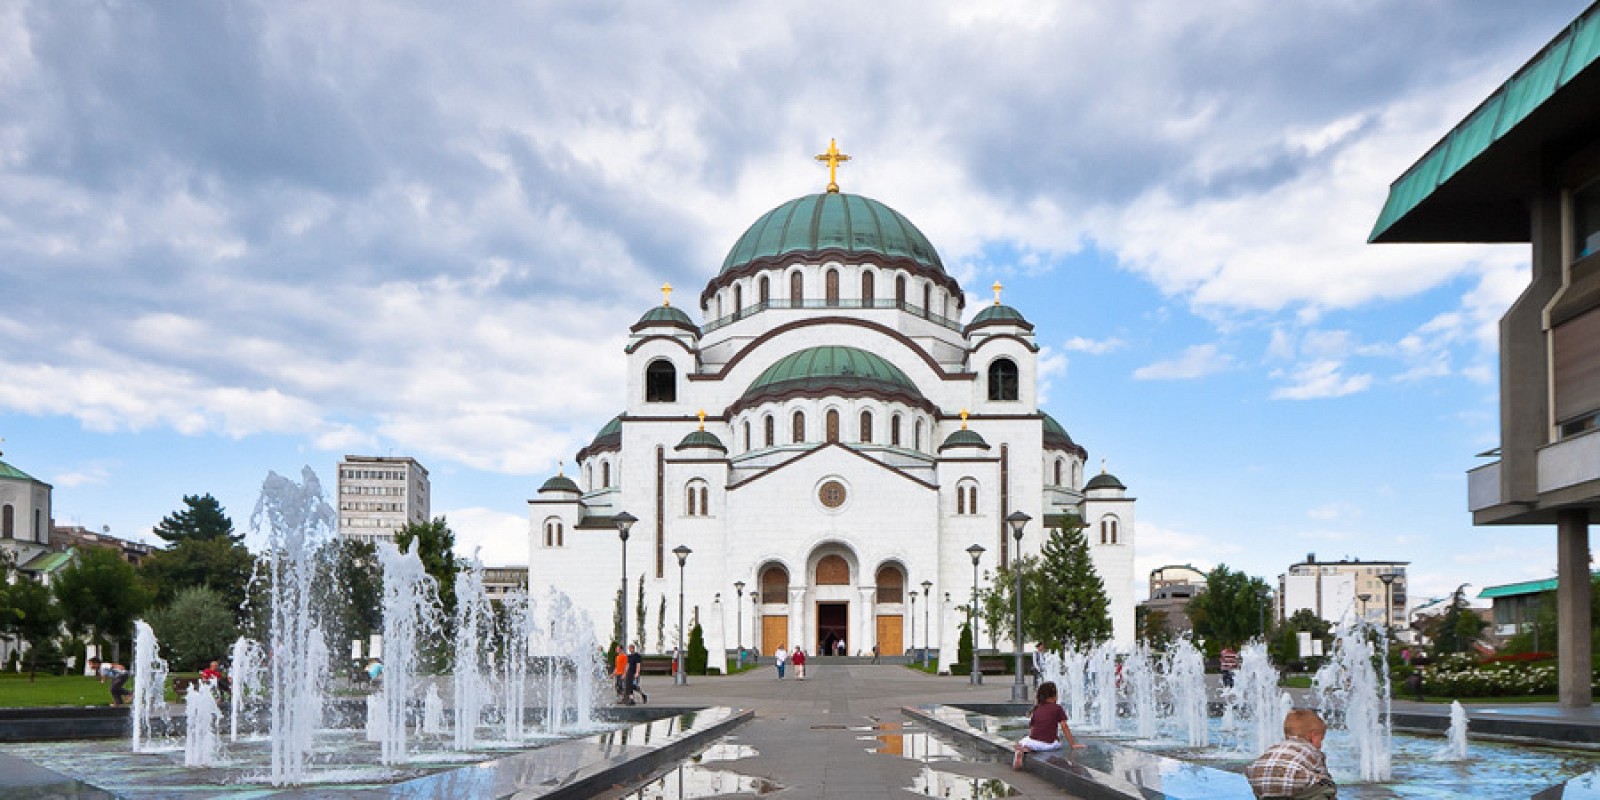 Μετά τη Βουλγαρική Εκκλησία και το Πατριαρχείο της Αντιόχειας, και η Σέρβικη Εκκλησία λέει “OXI” στην Πανορθόδοξη Σύνοδο